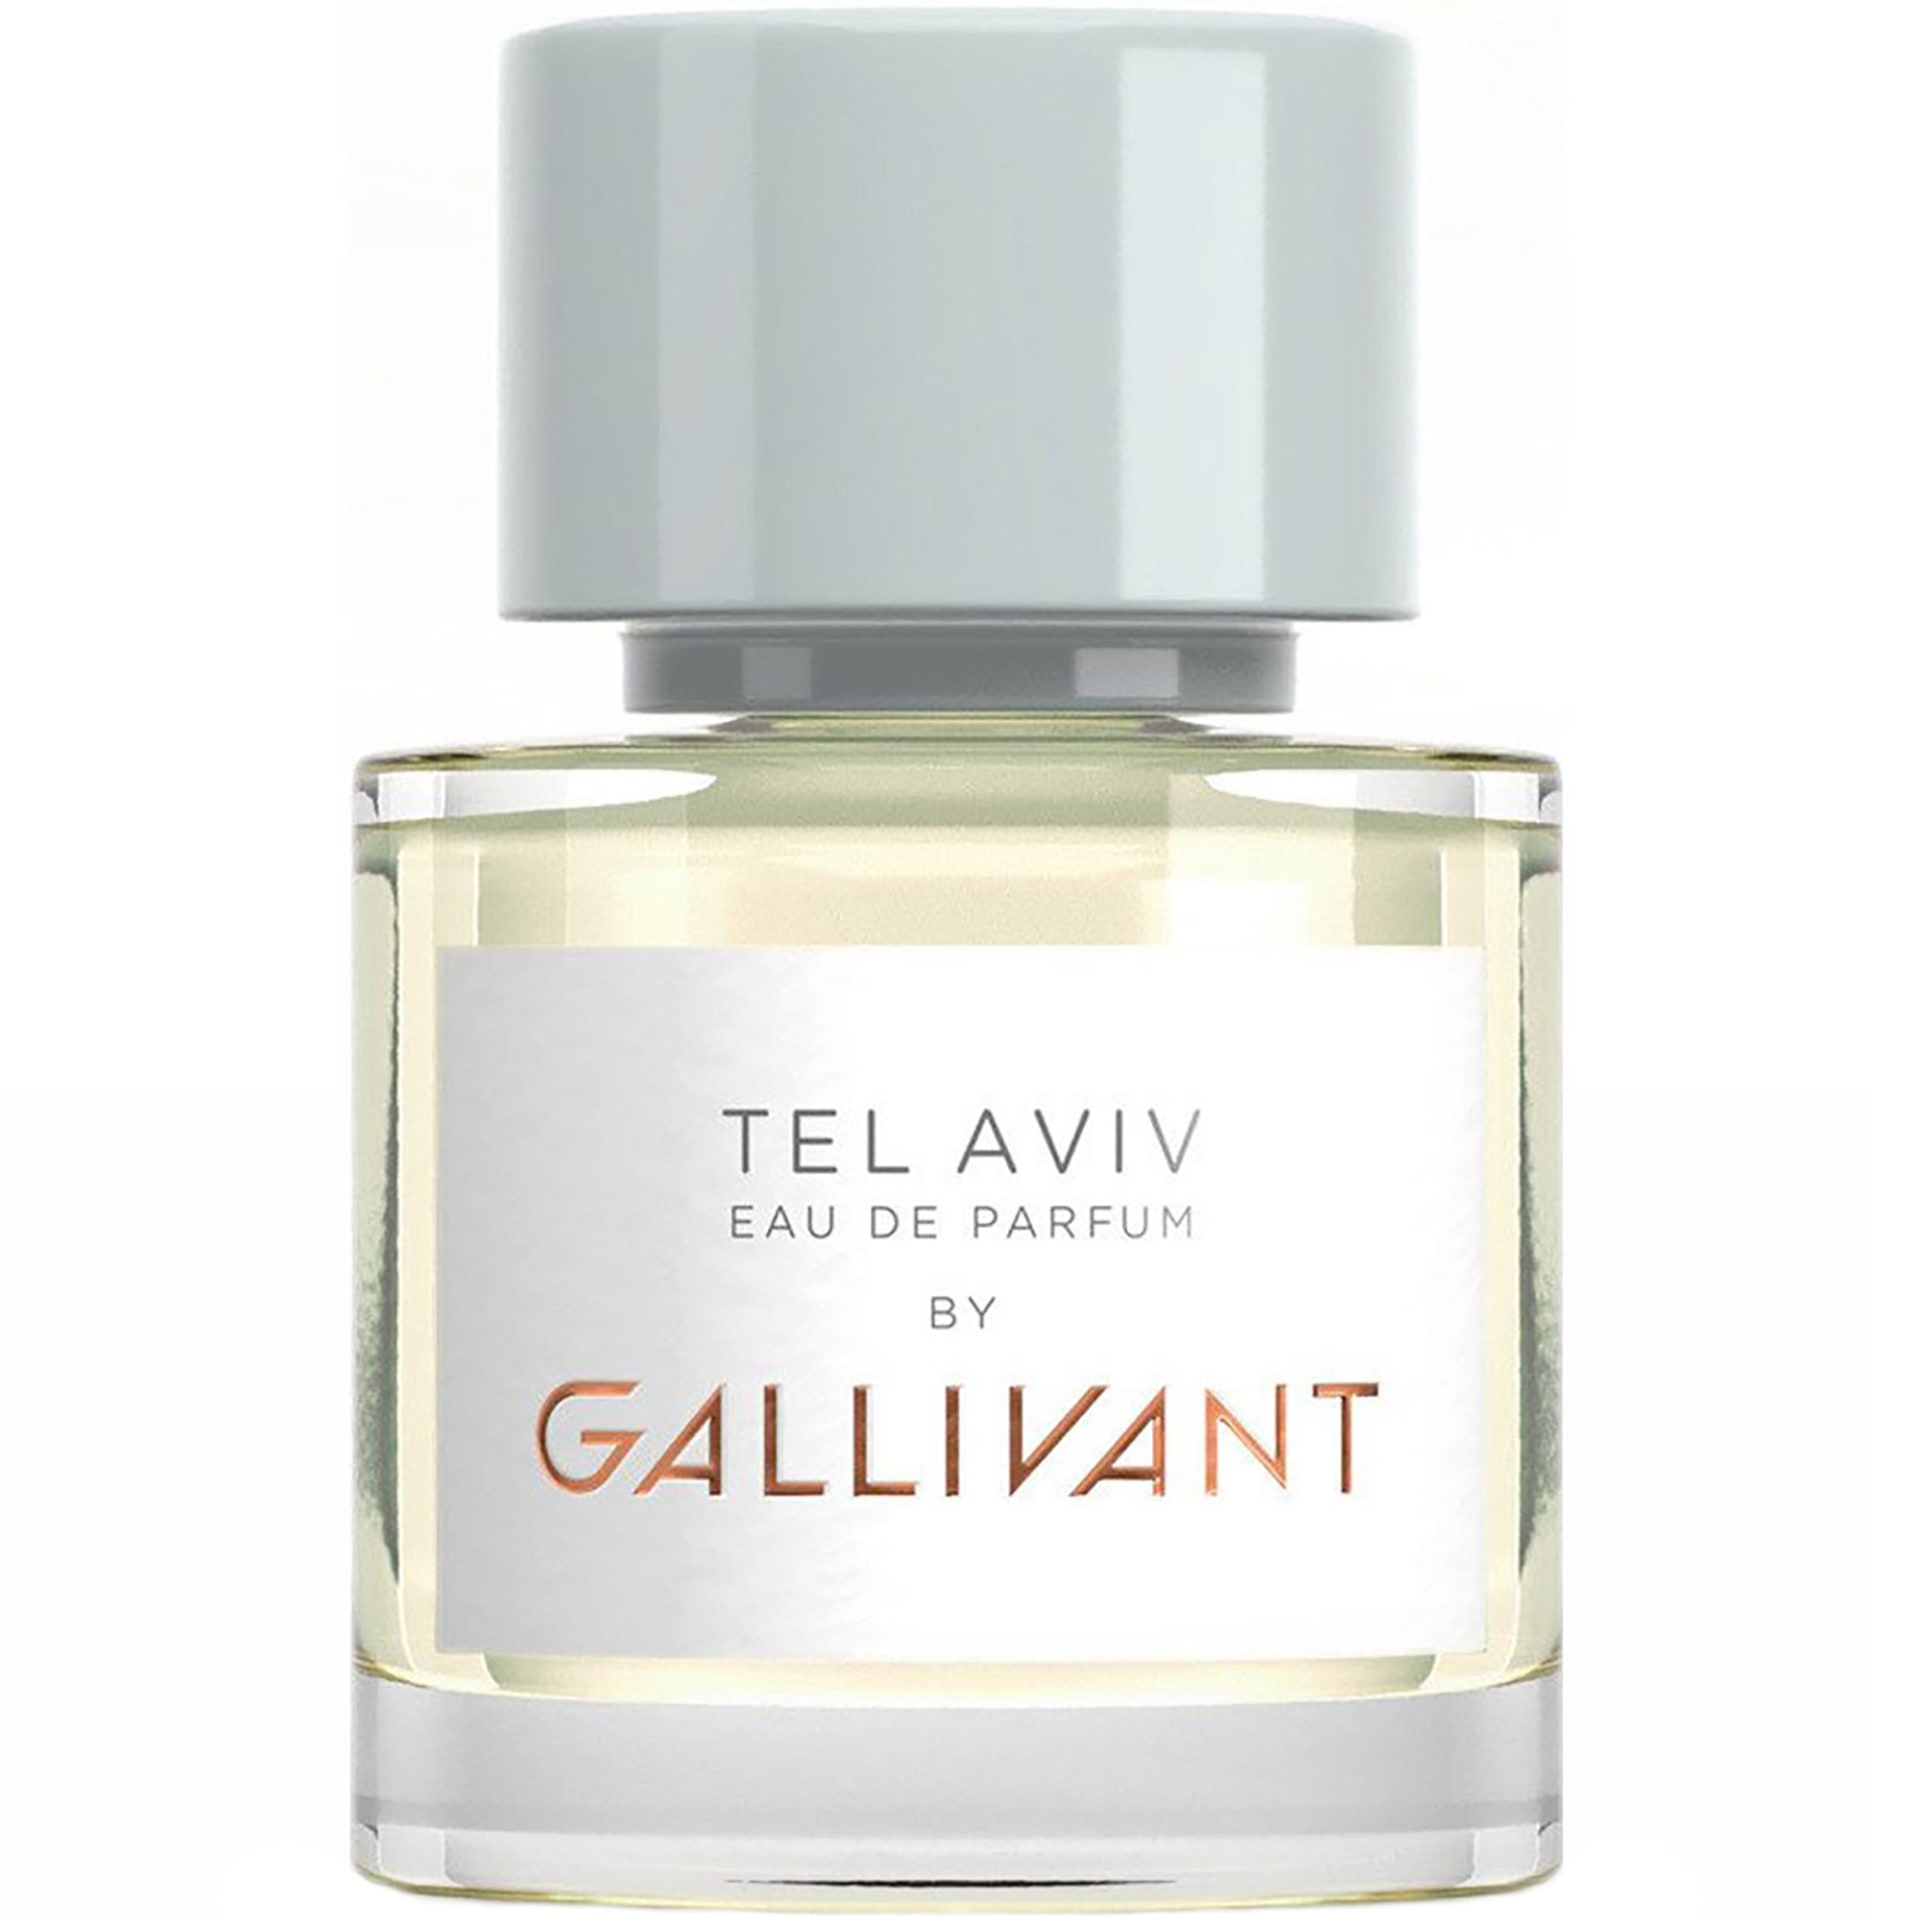 Gallivant Tel Aviv